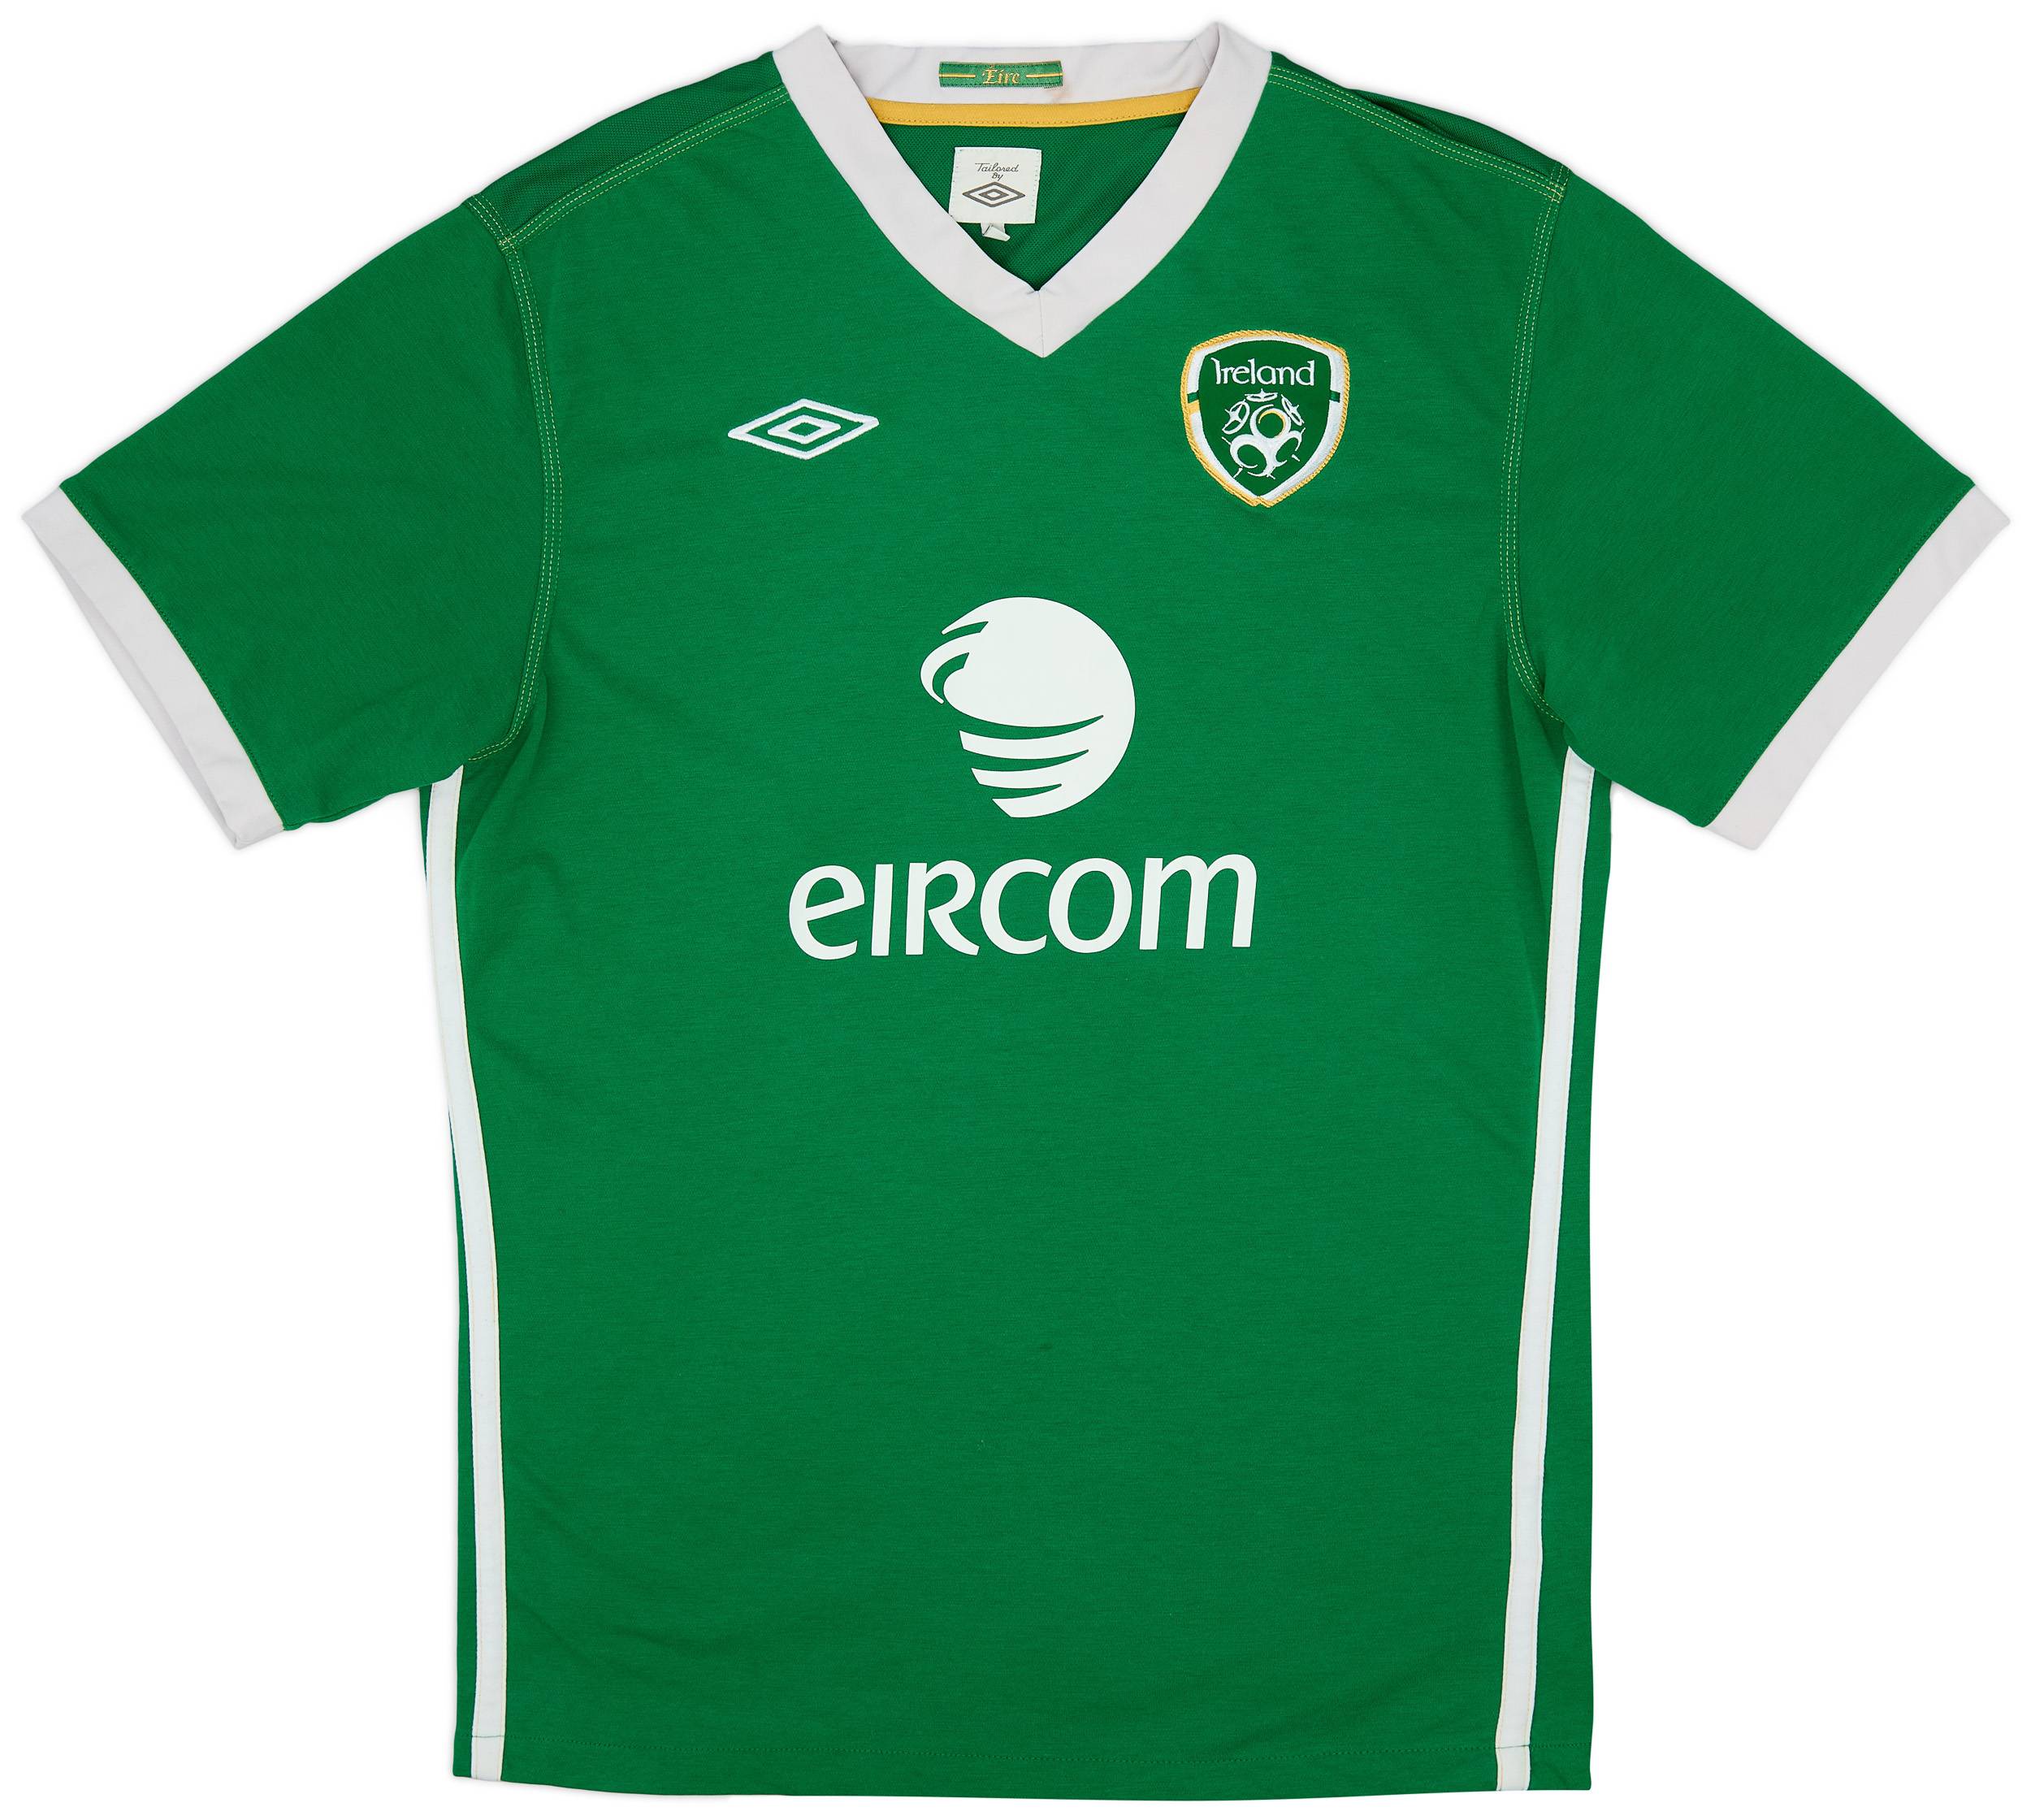 2010-11 Ireland Home Shirt - 5/10 - (L)